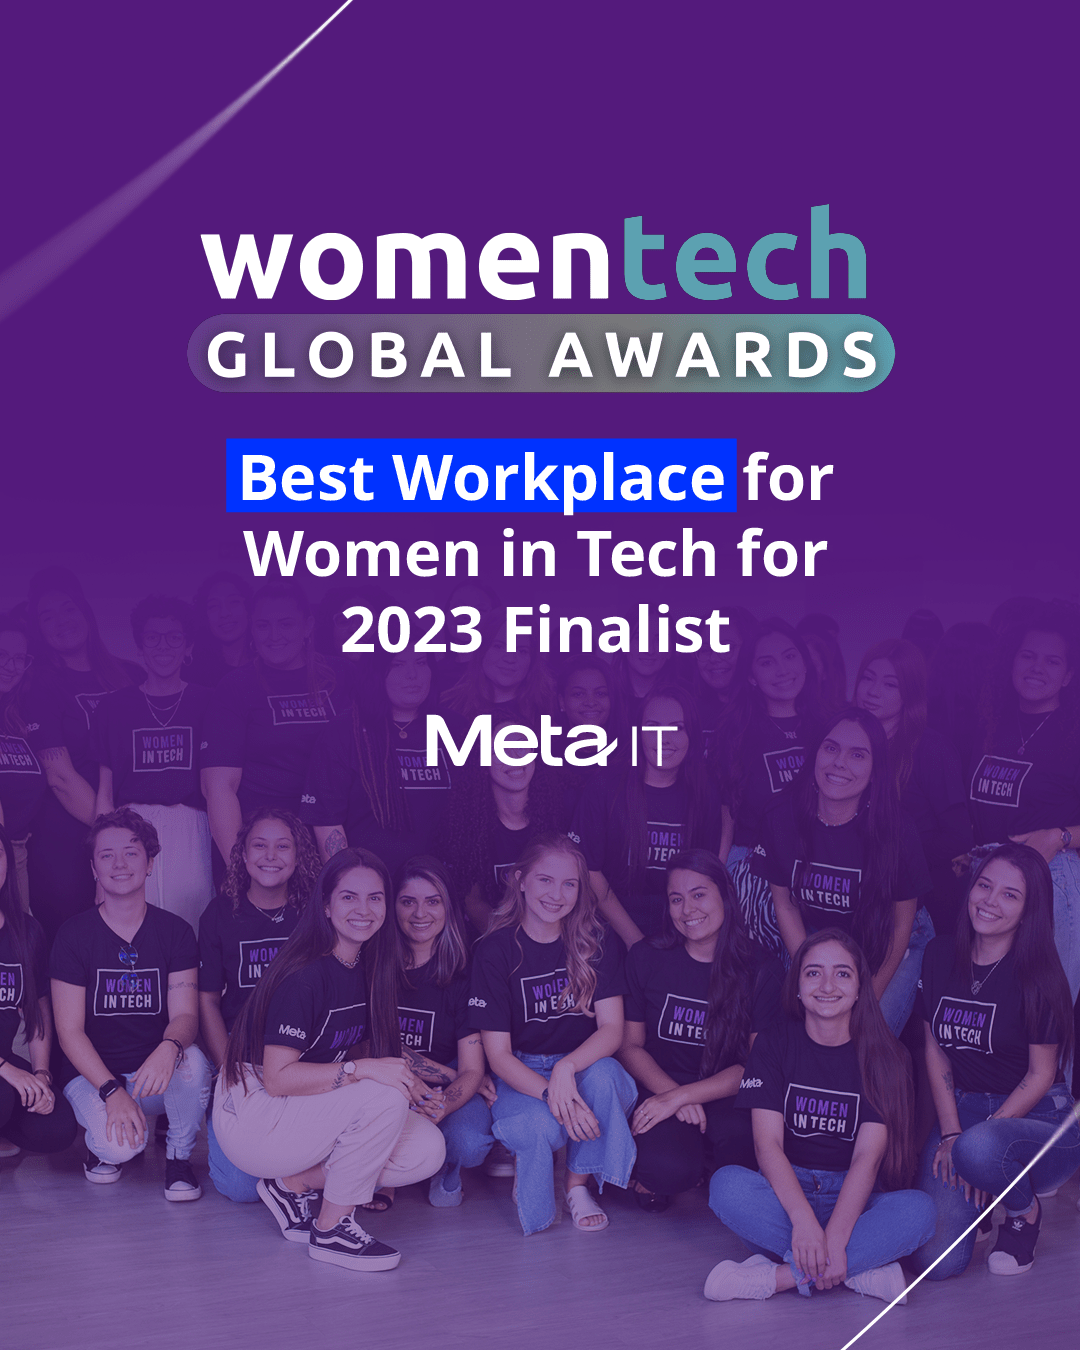 Women in Tech Global Awards - Best Workplace